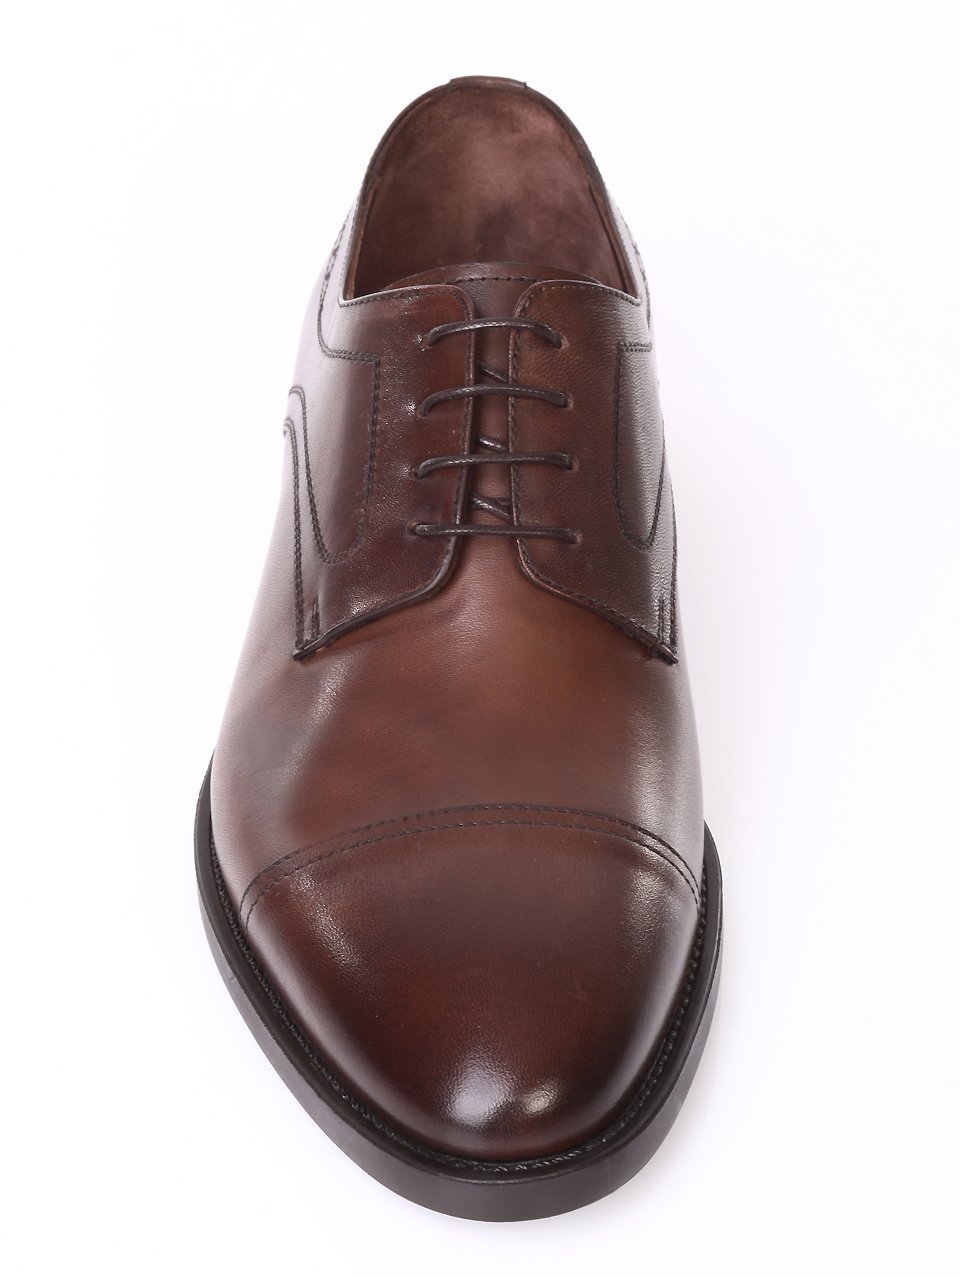 Елегантни мъжки обувки от естествена кожа 7AT-171130 brown